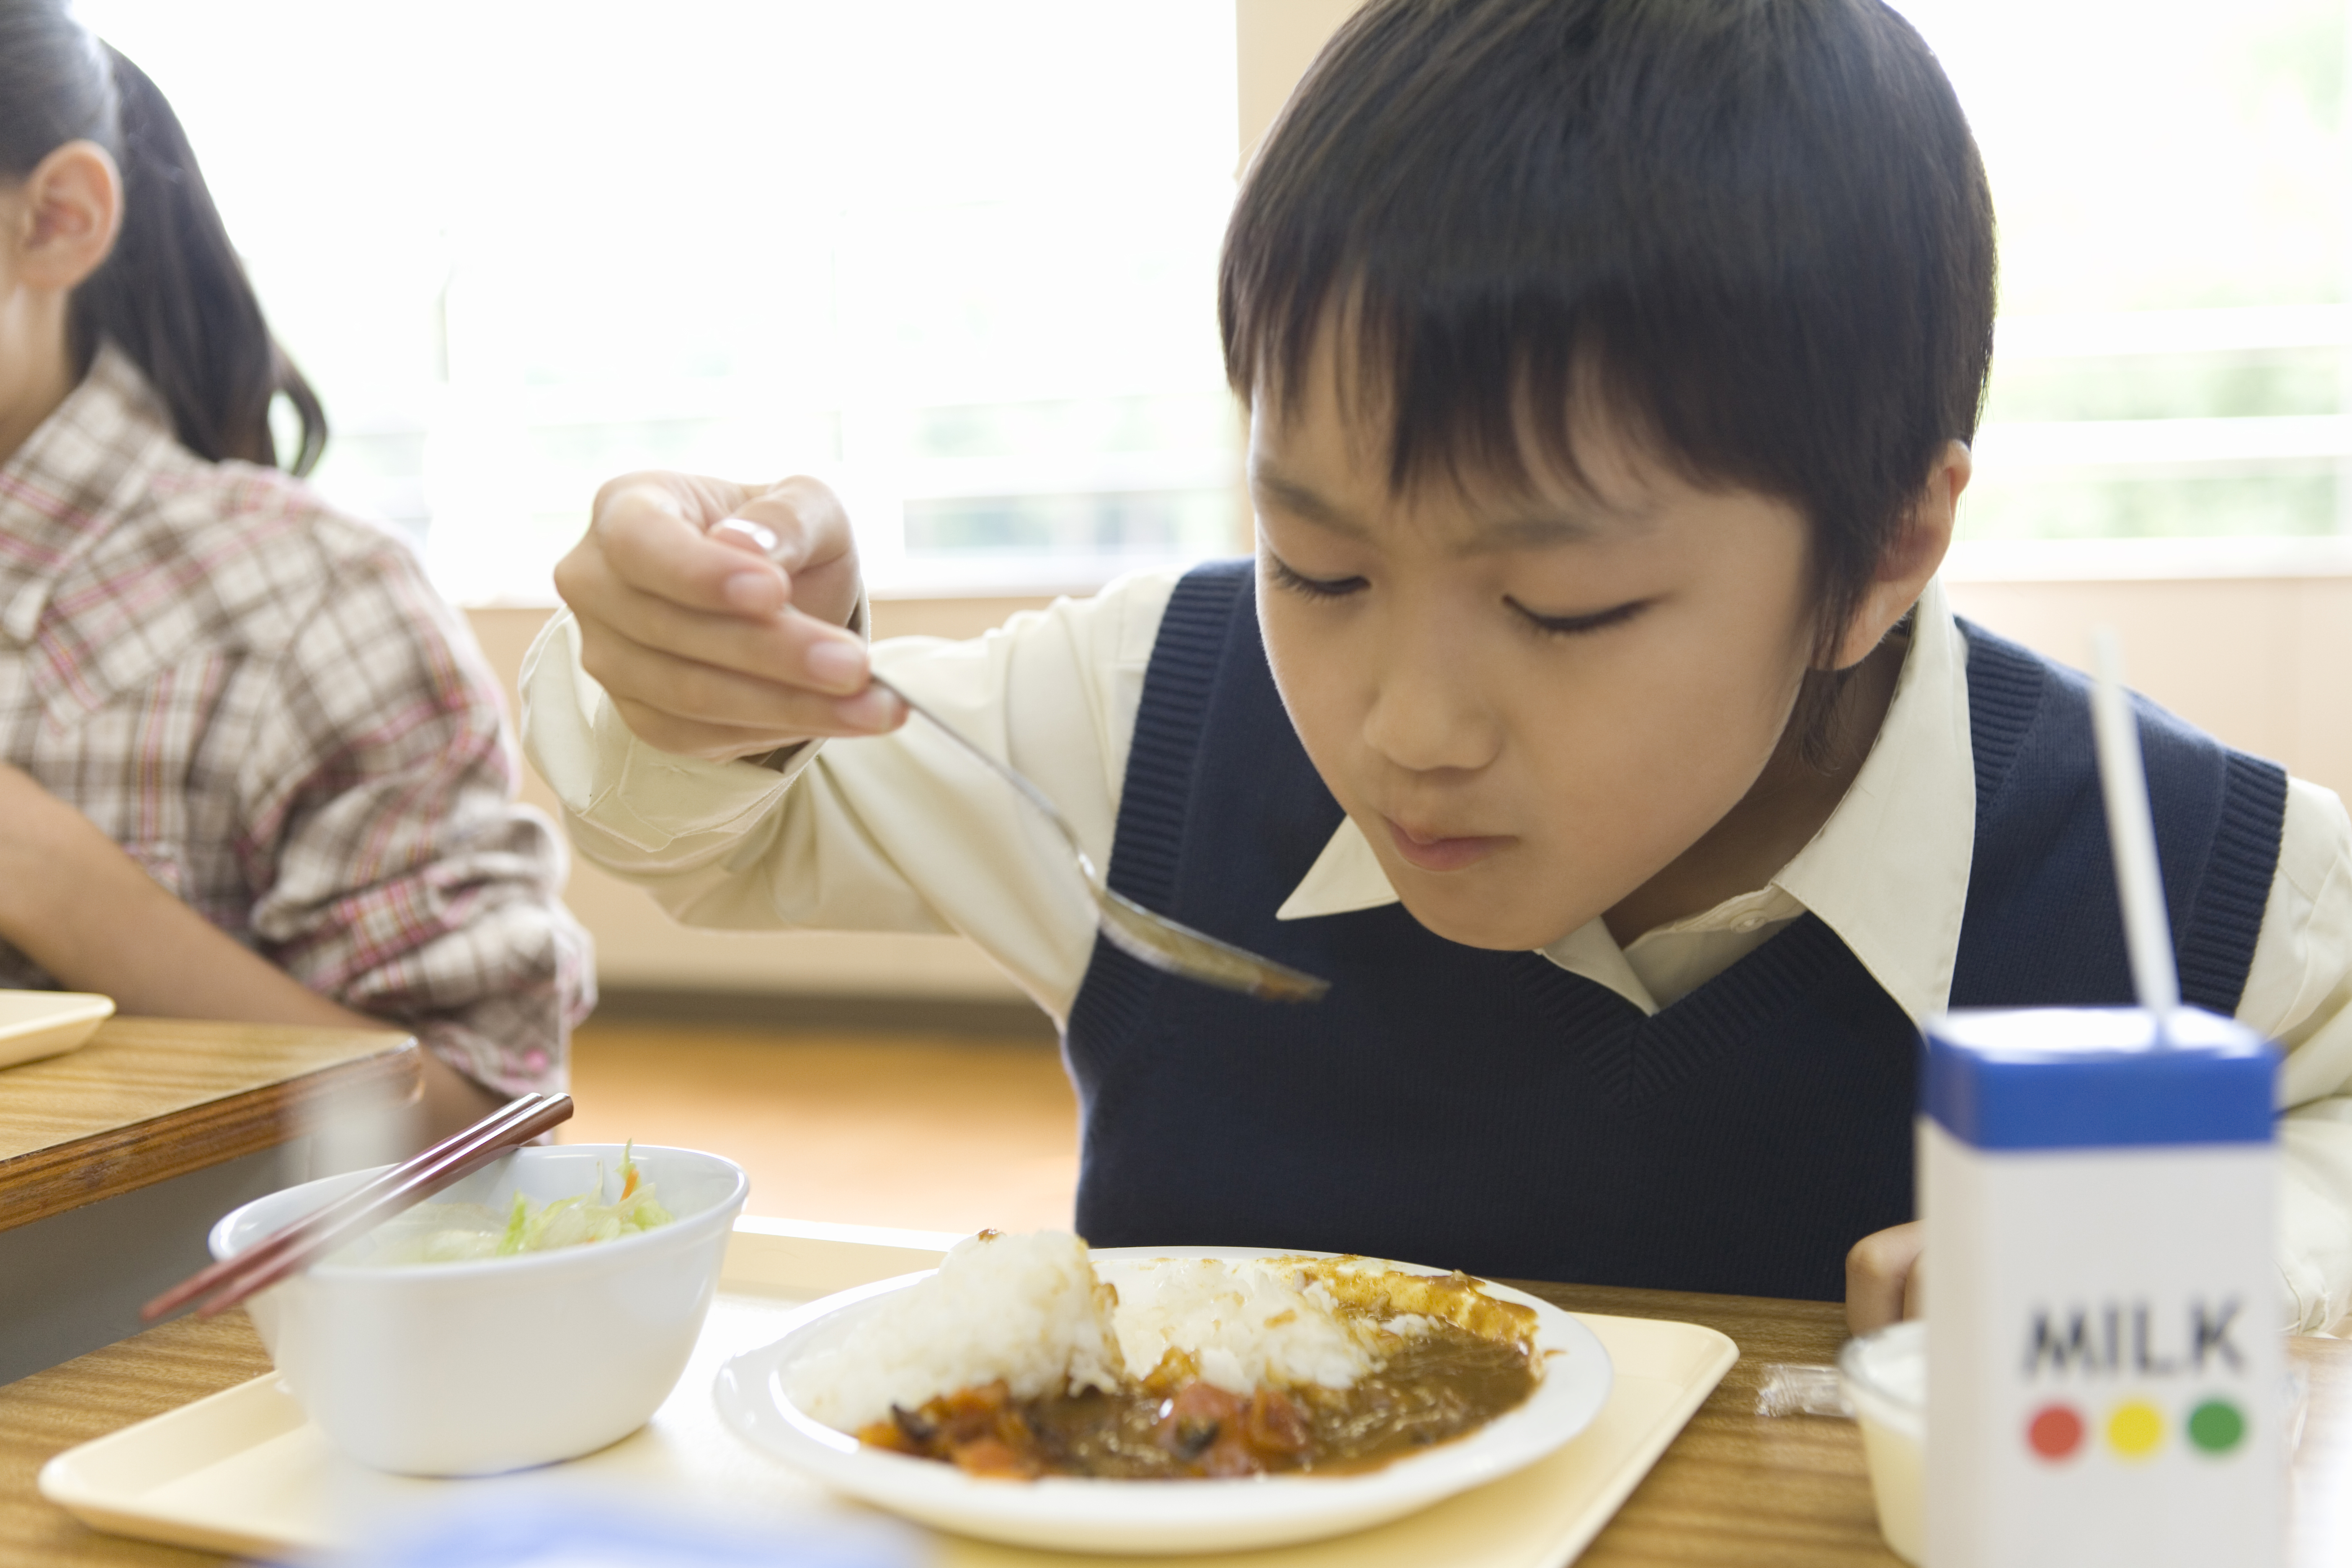 Boy eating school lunch. (Getty Image)